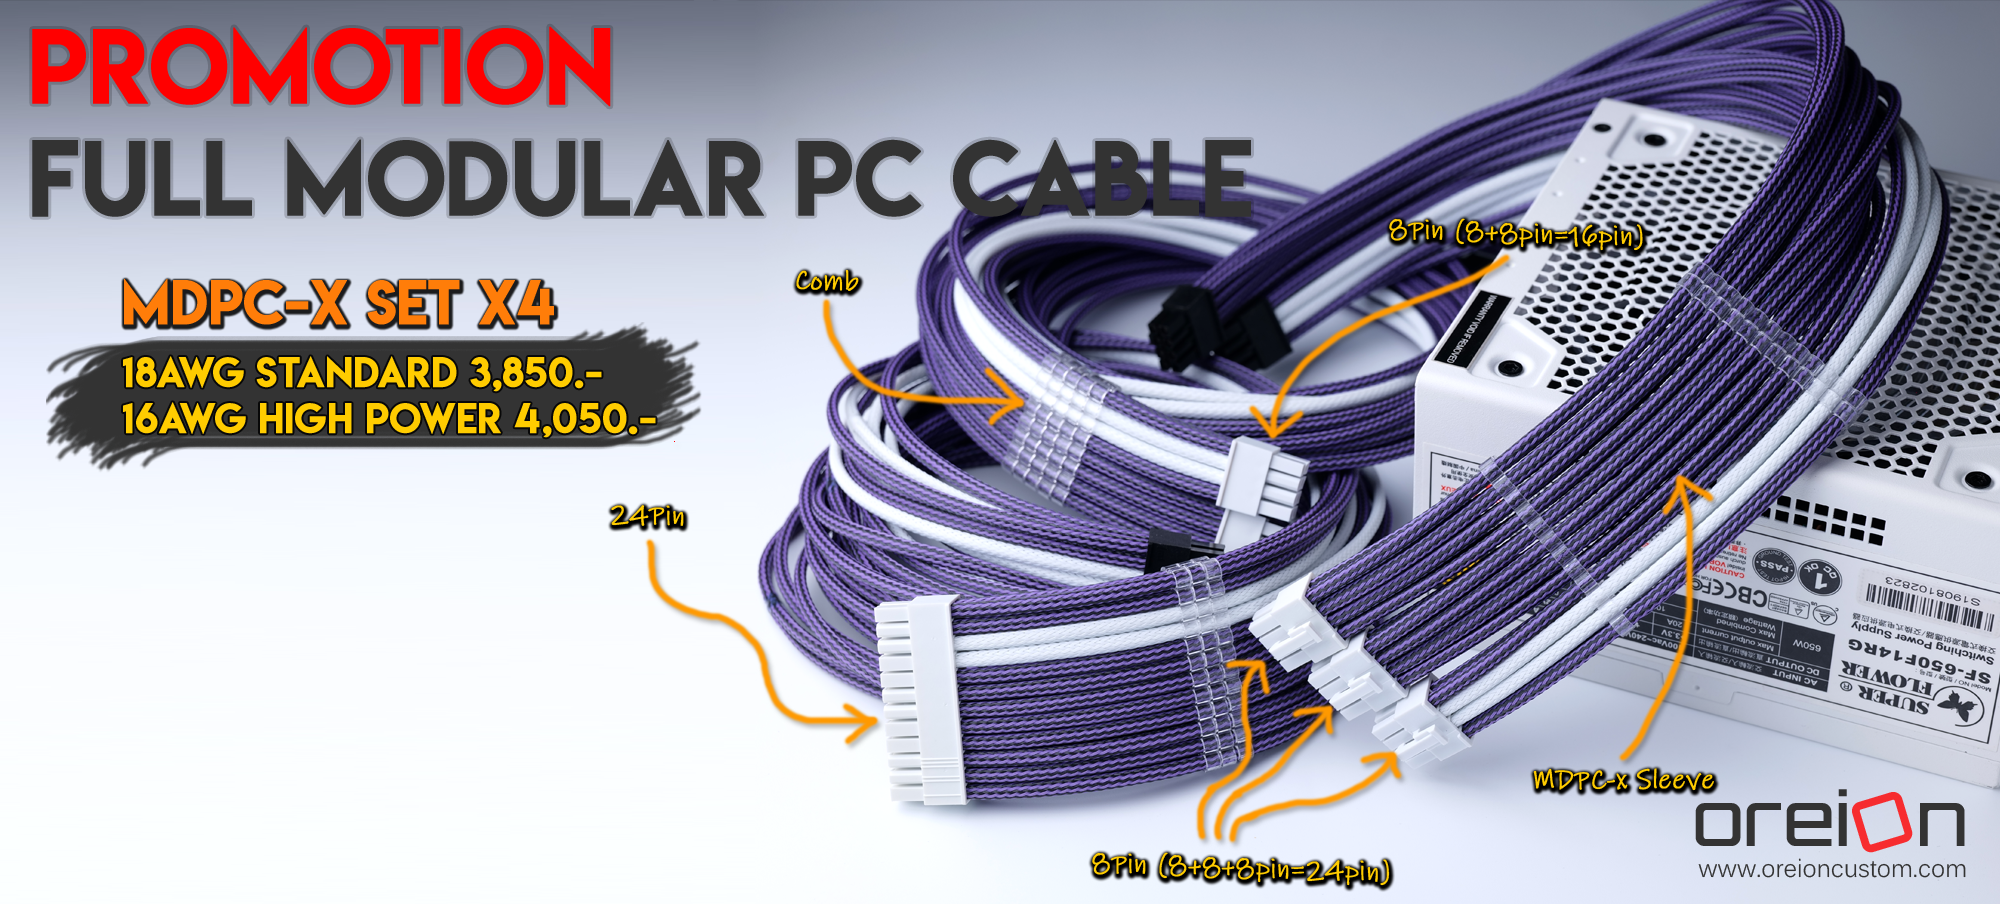 สายถัก Full modular PC Cable mdpc-x SET